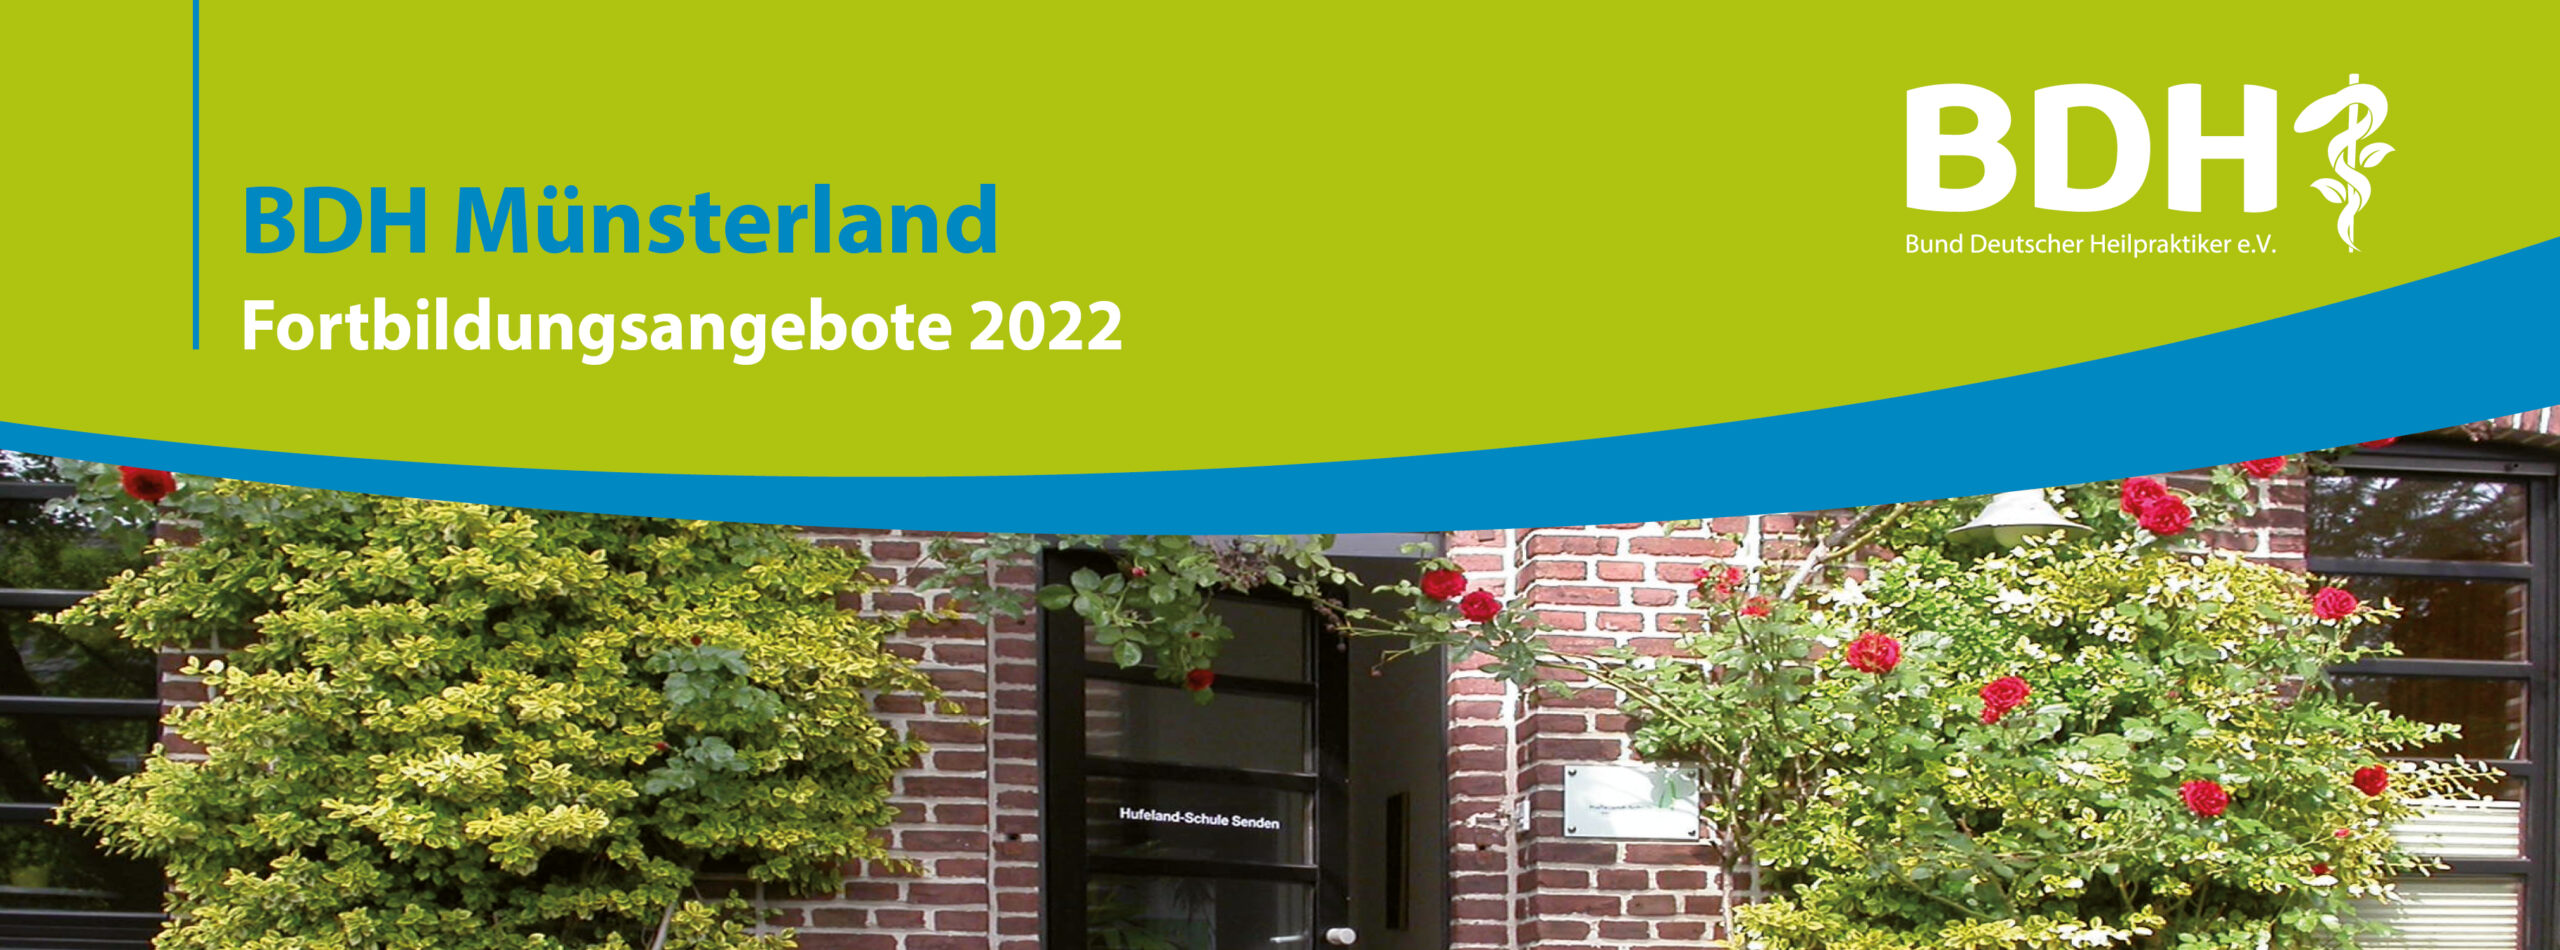 BDH-Fortbildungen im Münsterland - Programmflyer 2022 jetzt online